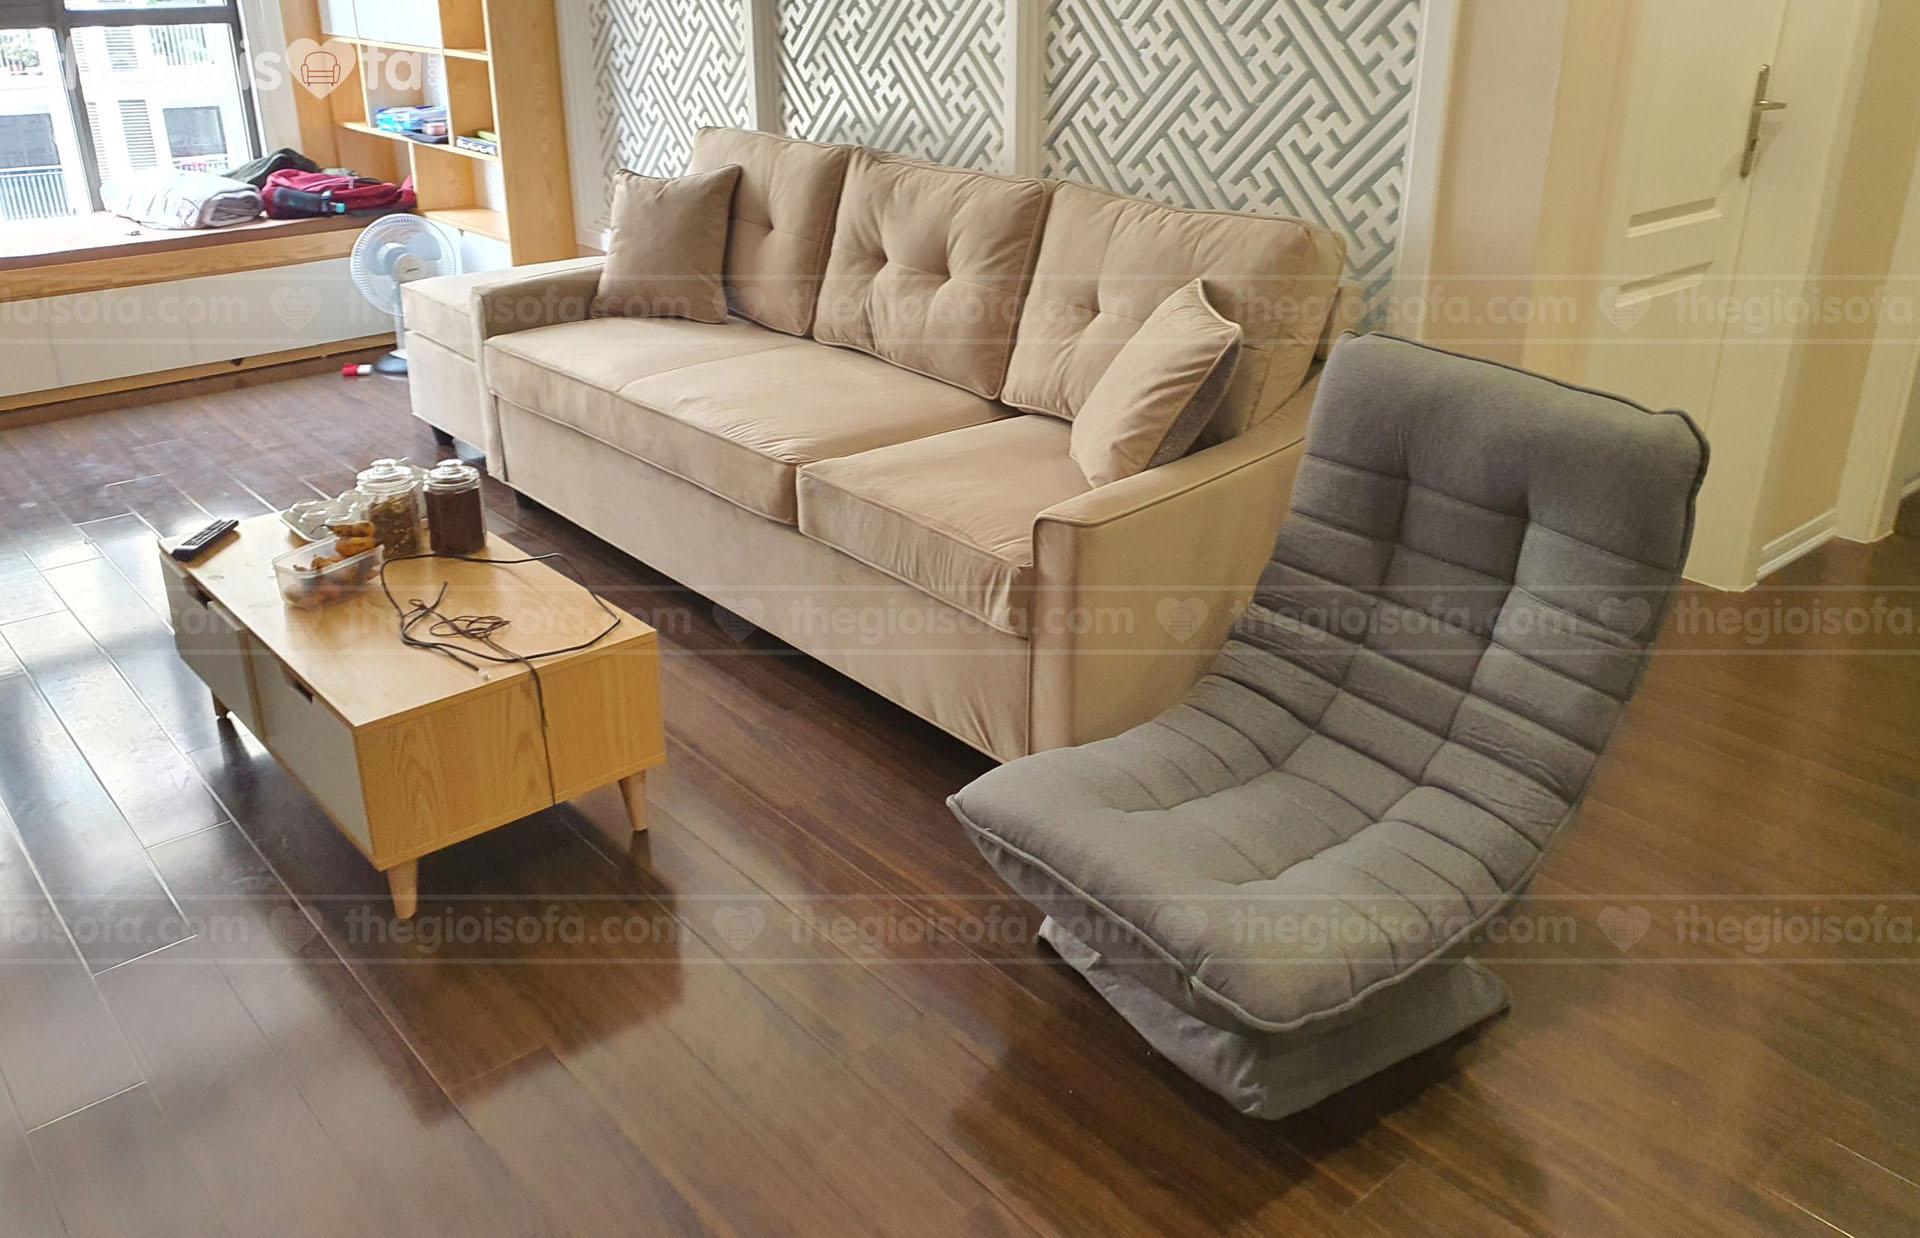 Giao hàng sofa Eden và ghế xoay 360 độ cho anh Nhất ở Sunsine Palace Lĩnh Nam – Hoàng Mai – Hà Nội